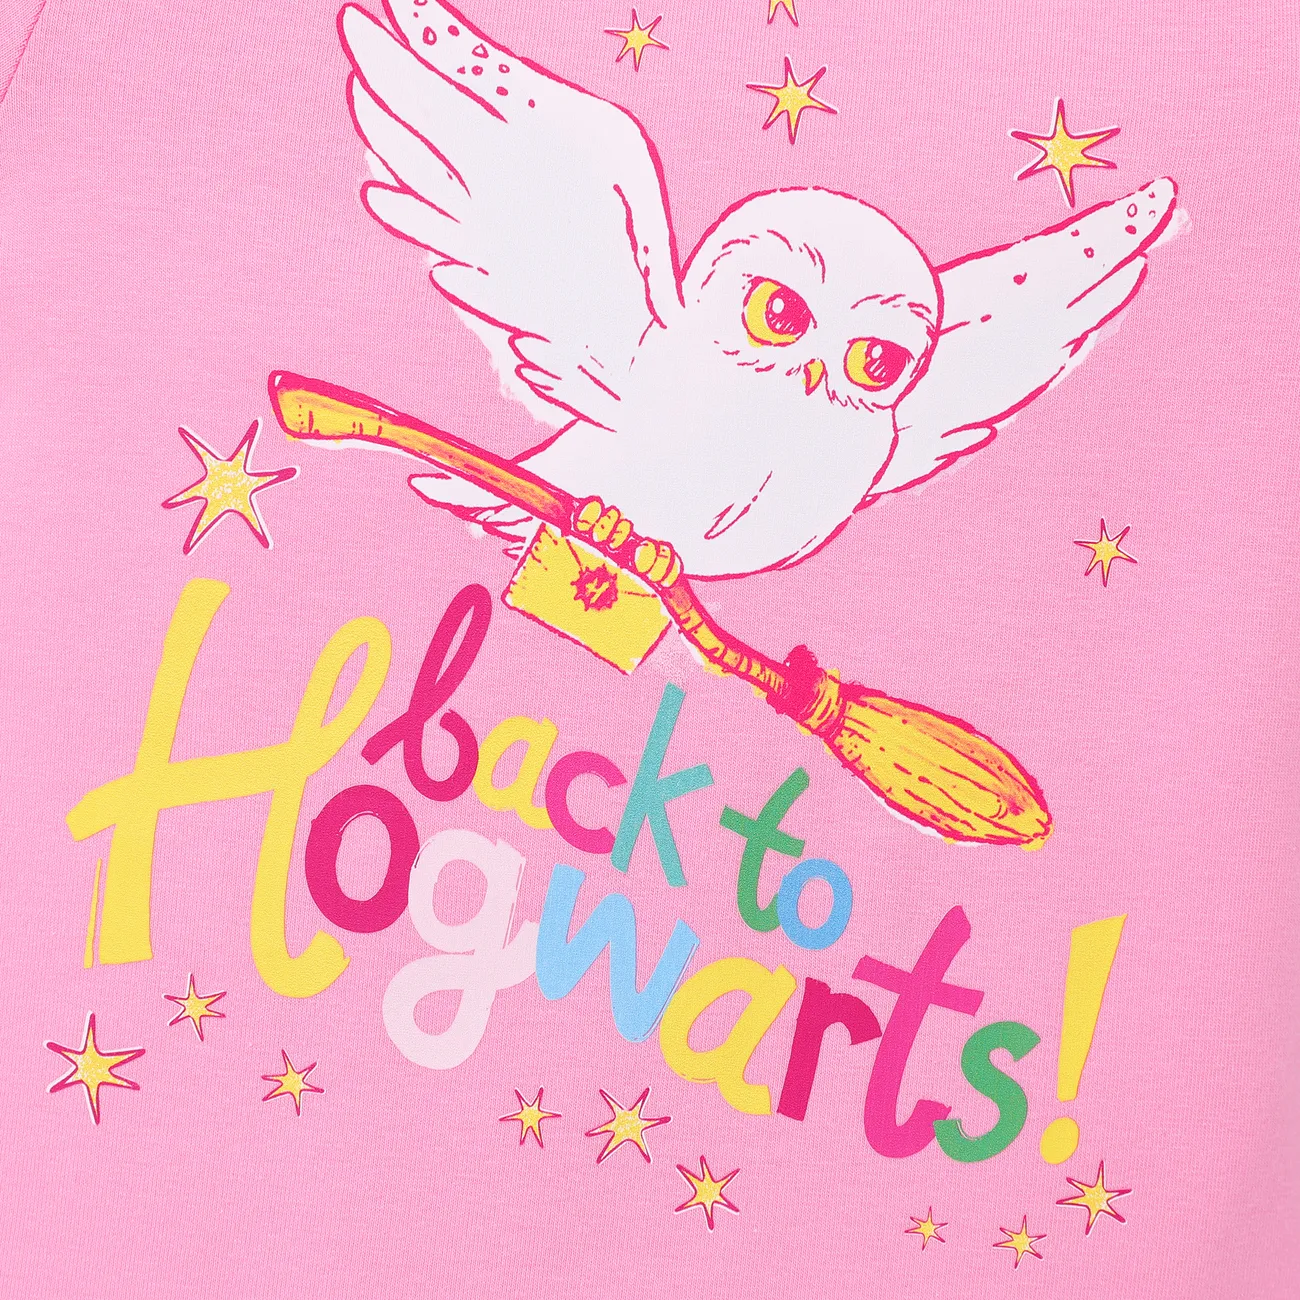 哈利波特 嬰兒 女 童趣 短袖 連身衣 粉色 big image 1